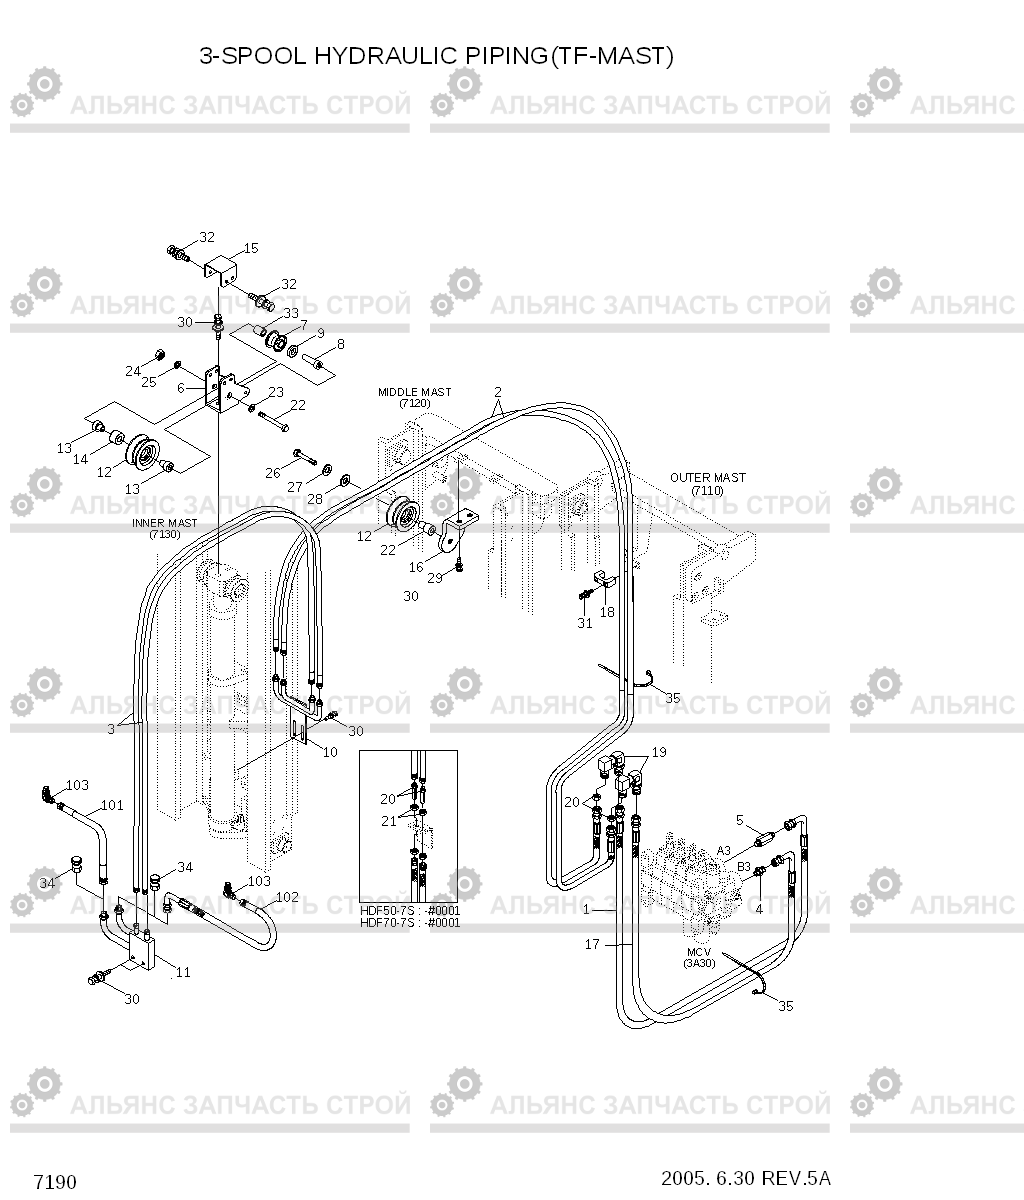 7190 3-SPOOL HYDRAULIC PIPING(TF-MAST) HDF50/70-7S, Hyundai